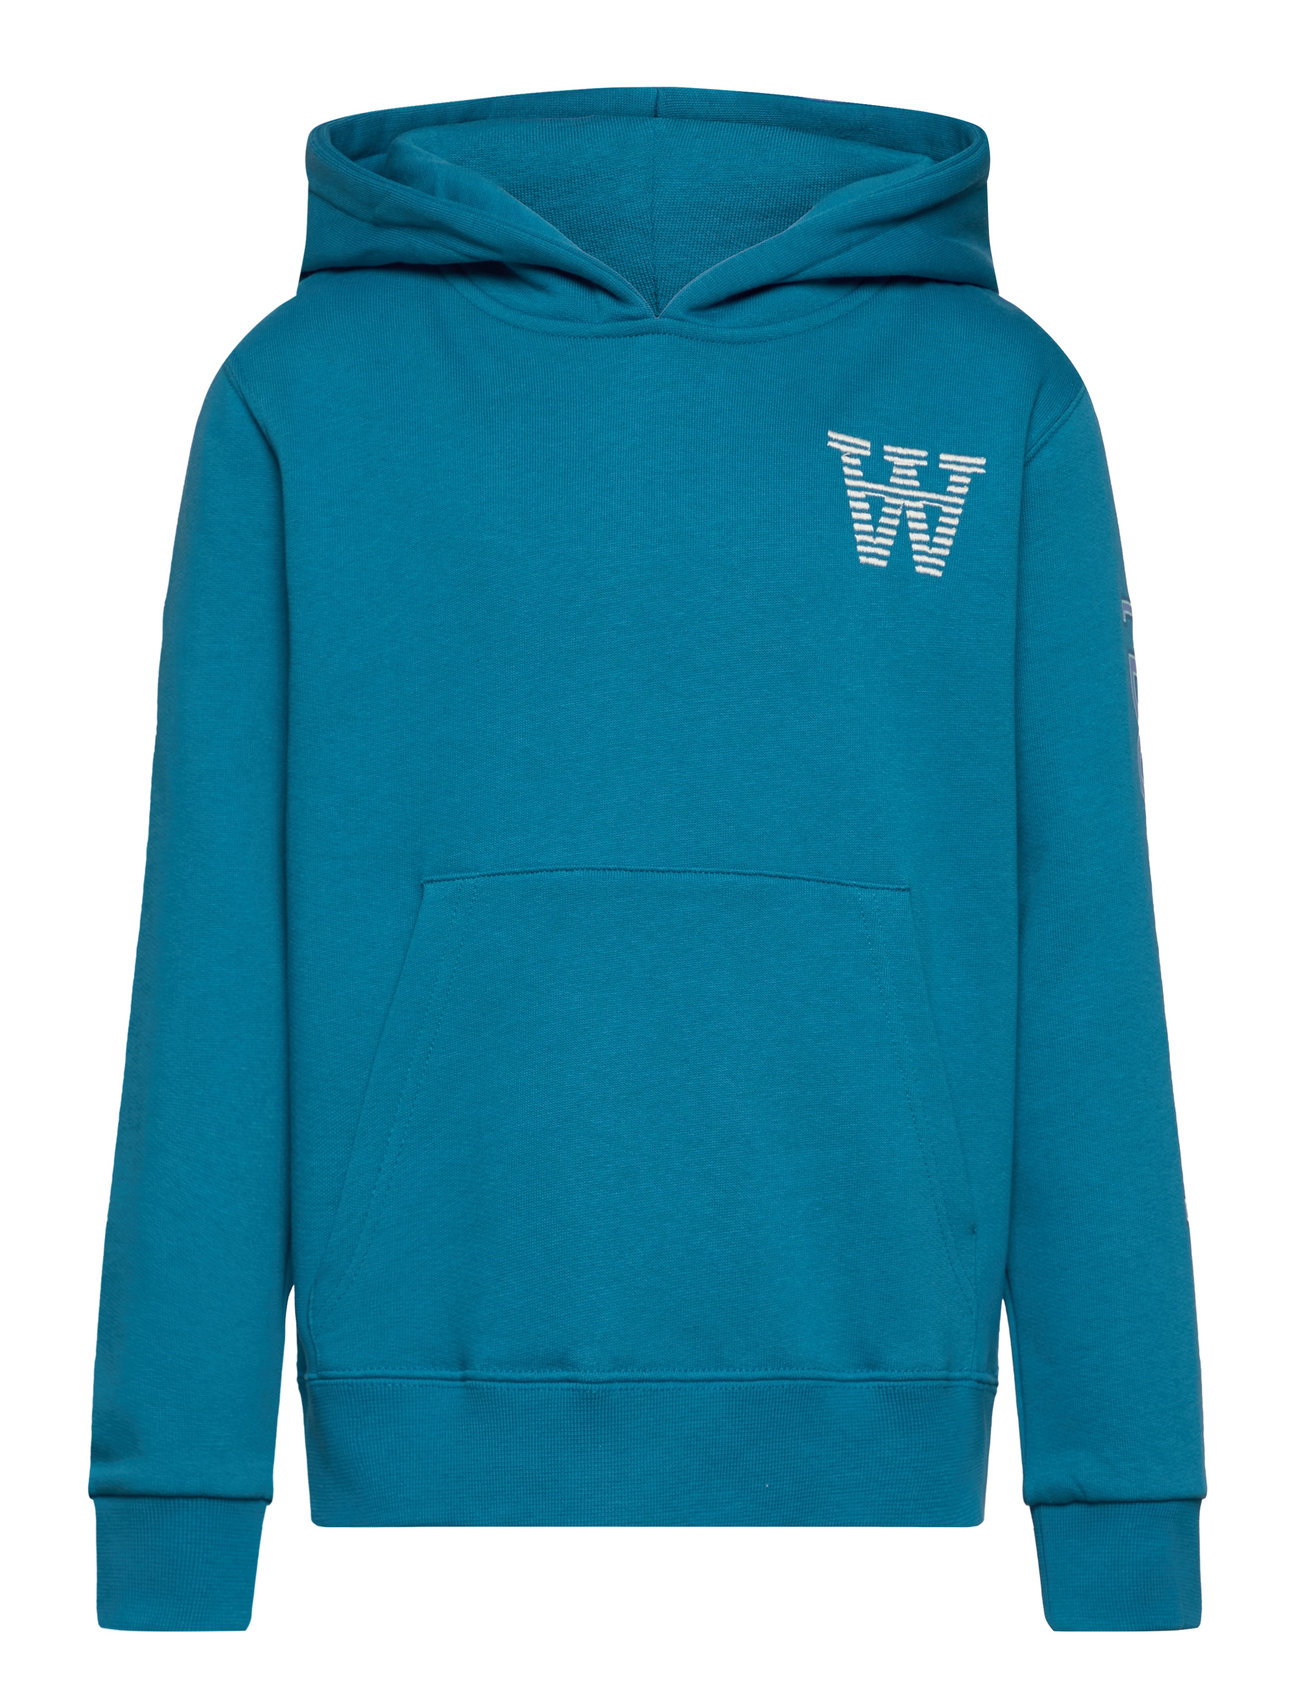 Izzy Kids Sleeve Print Hoodie Tops Sweatshirts & Hoodies Hoodies Blue Wood Wood